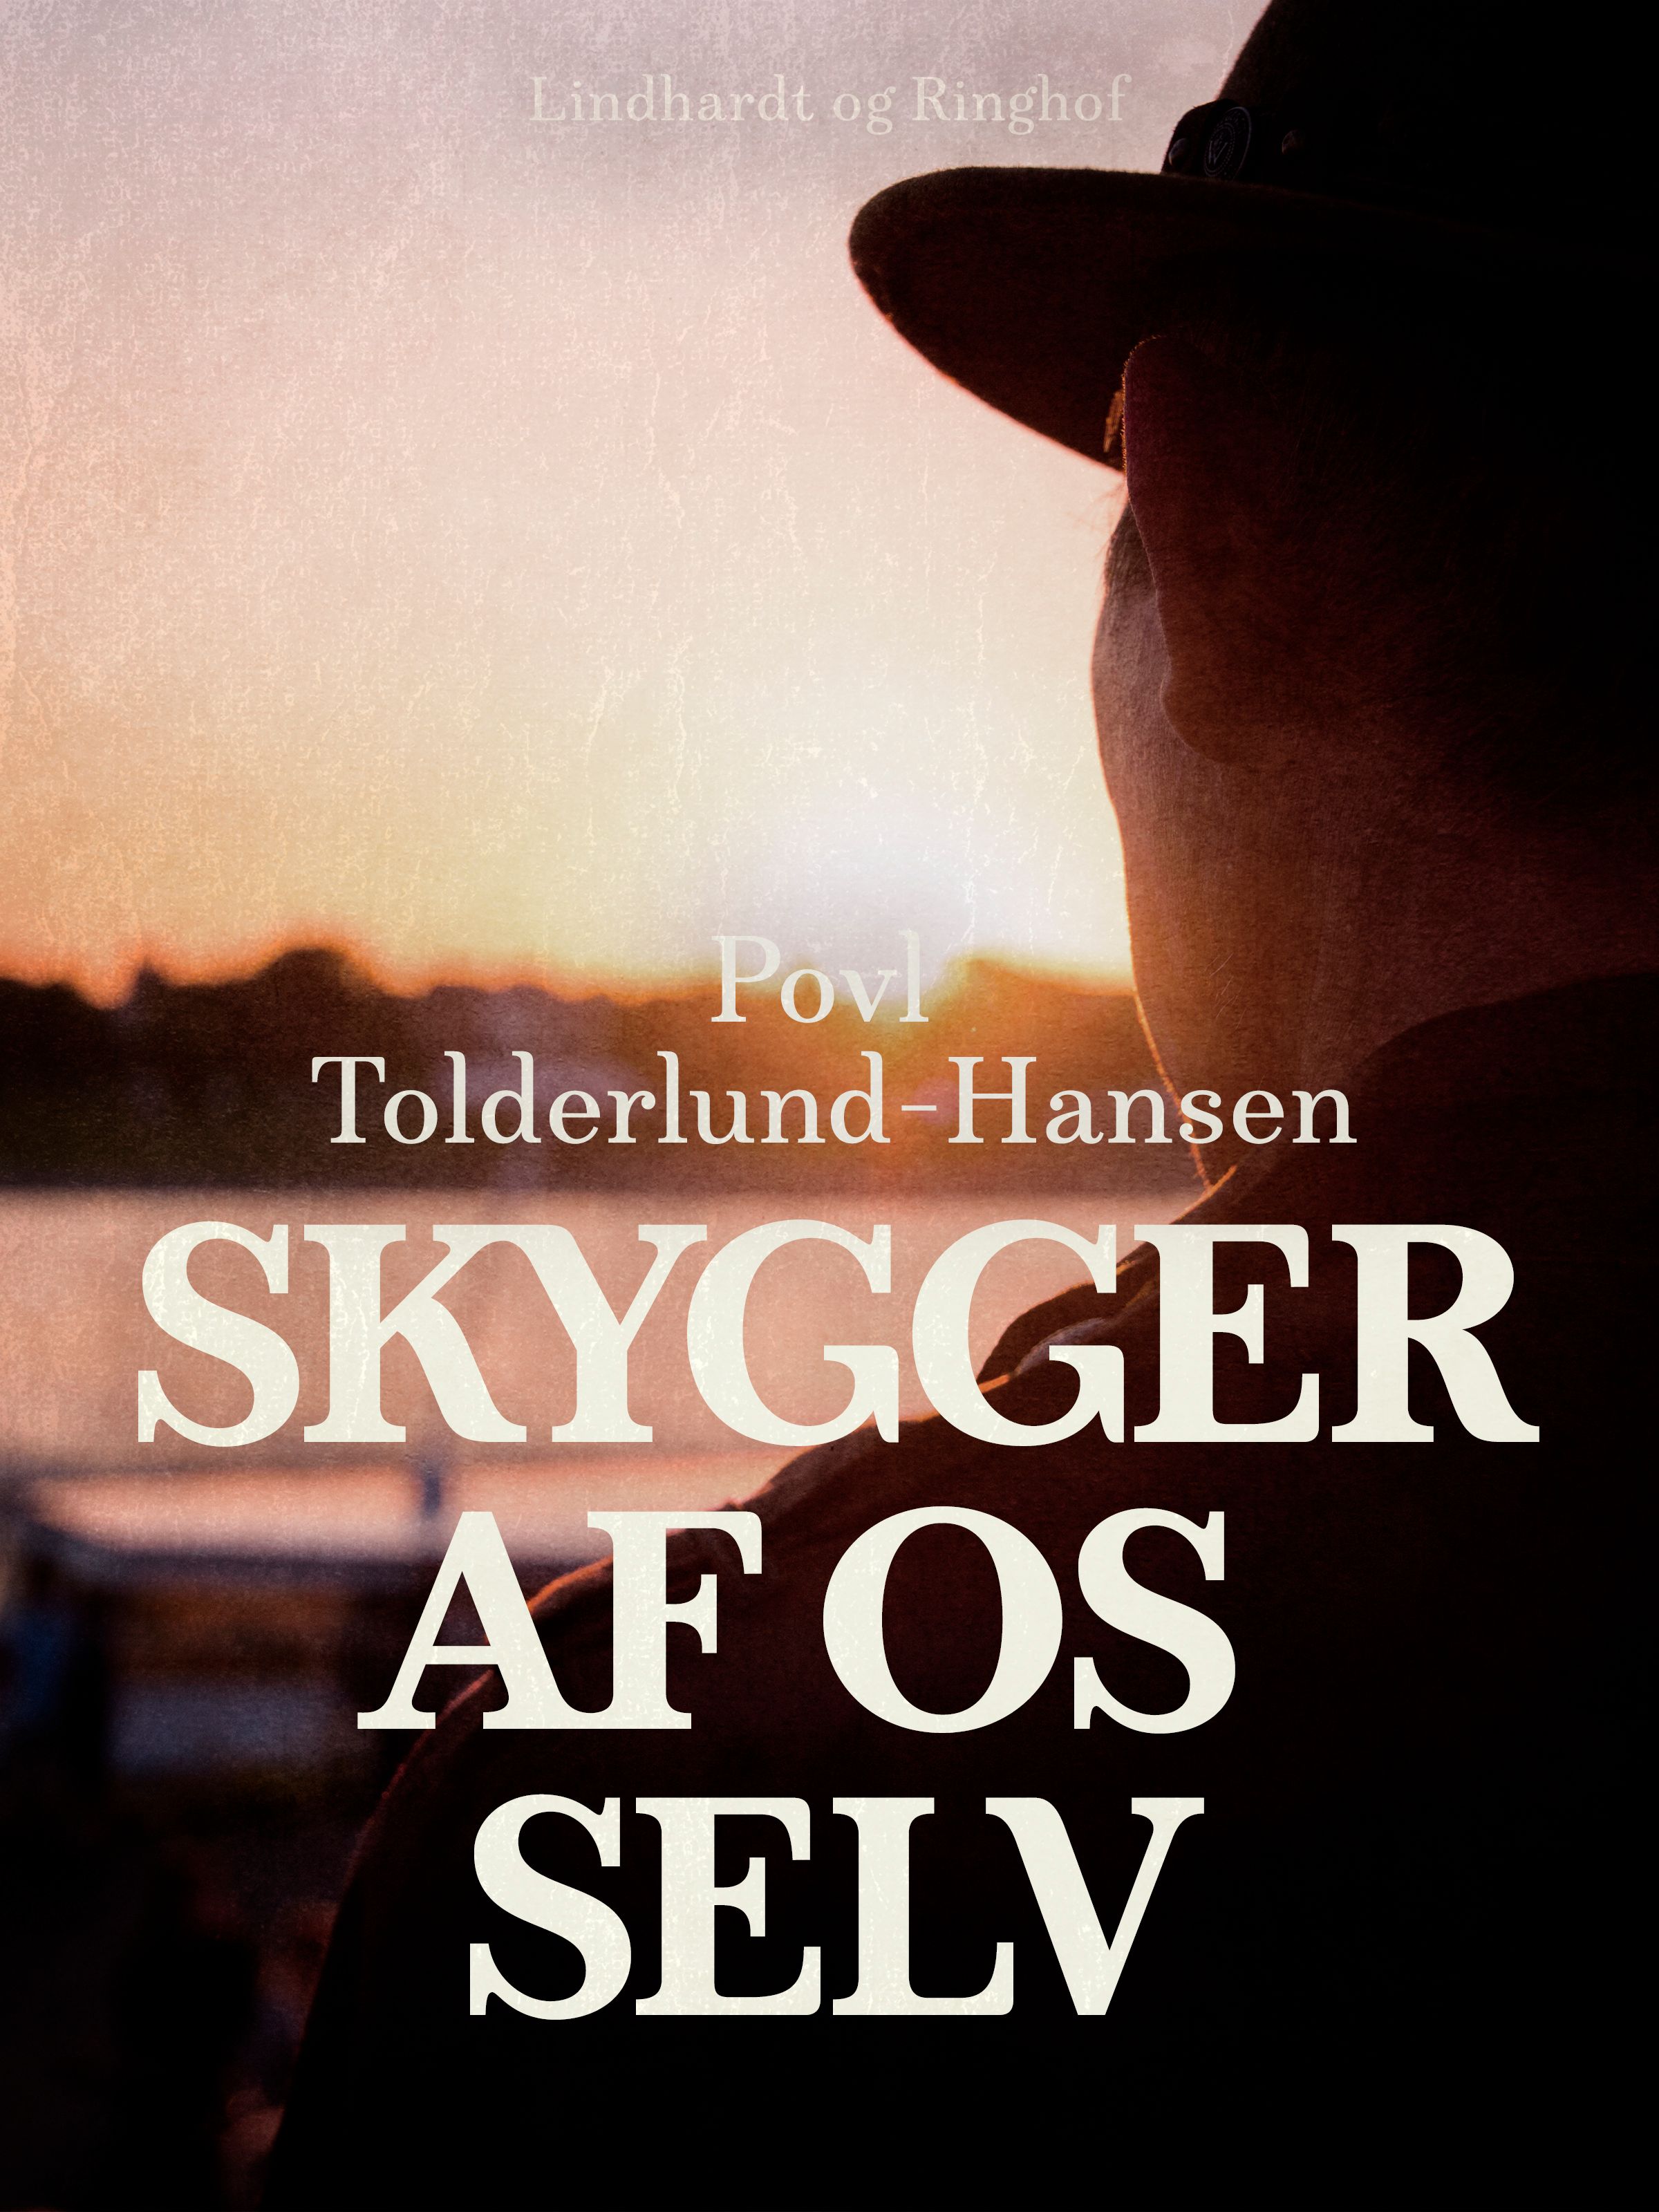 Skygger af os selv, e-bok av Povl Tolderlund Hansen